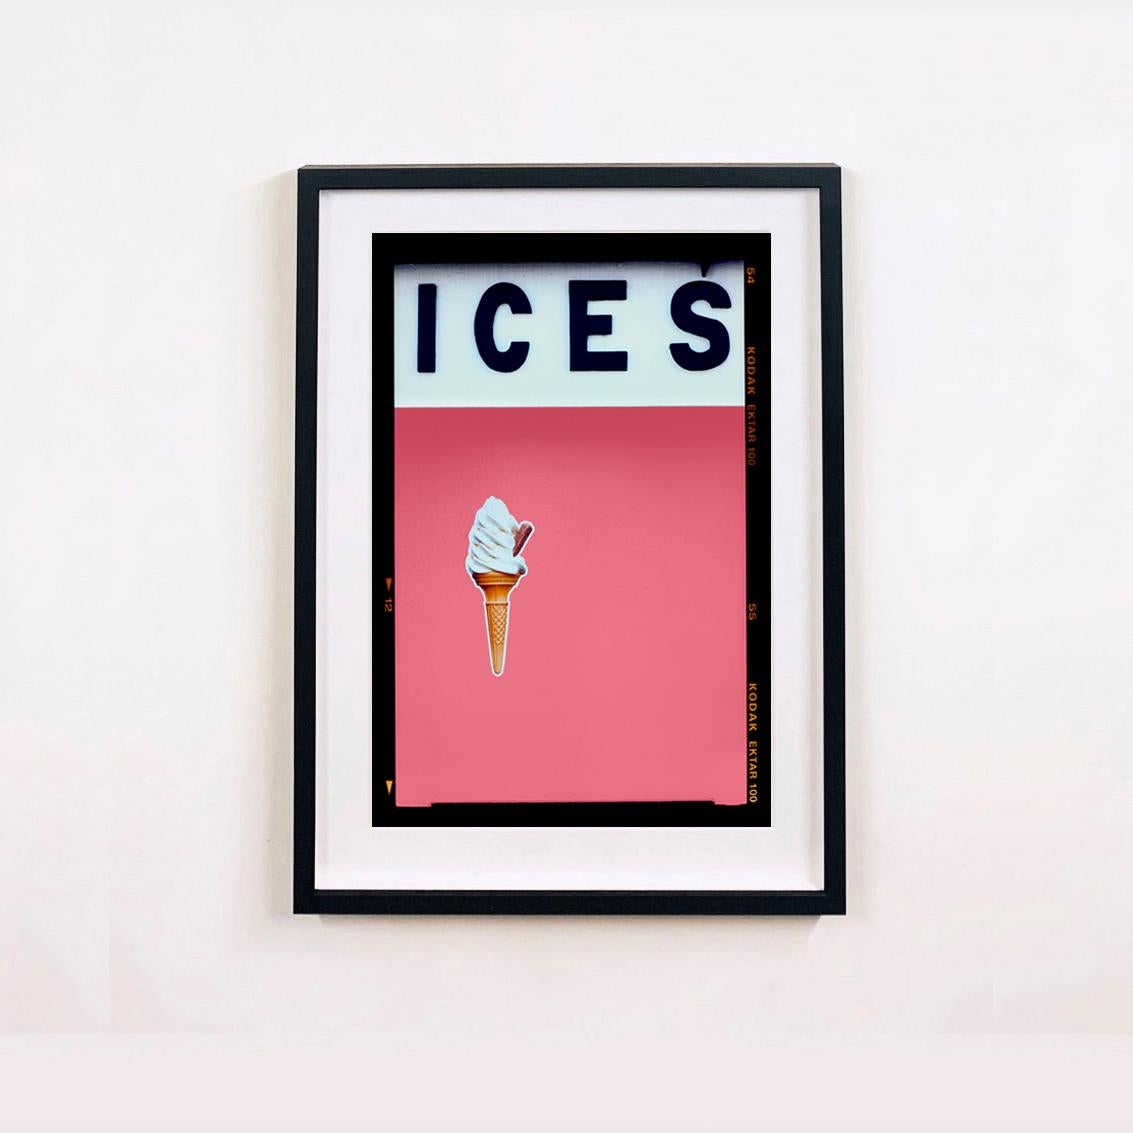 ICES Mehrfarbiger Satz von sechzehn gerahmten Kunstwerken.
Ein Satz von sechzehn Pop-Art-Drucken von Richard Heeps aus seiner Great British Staycation-Serie 